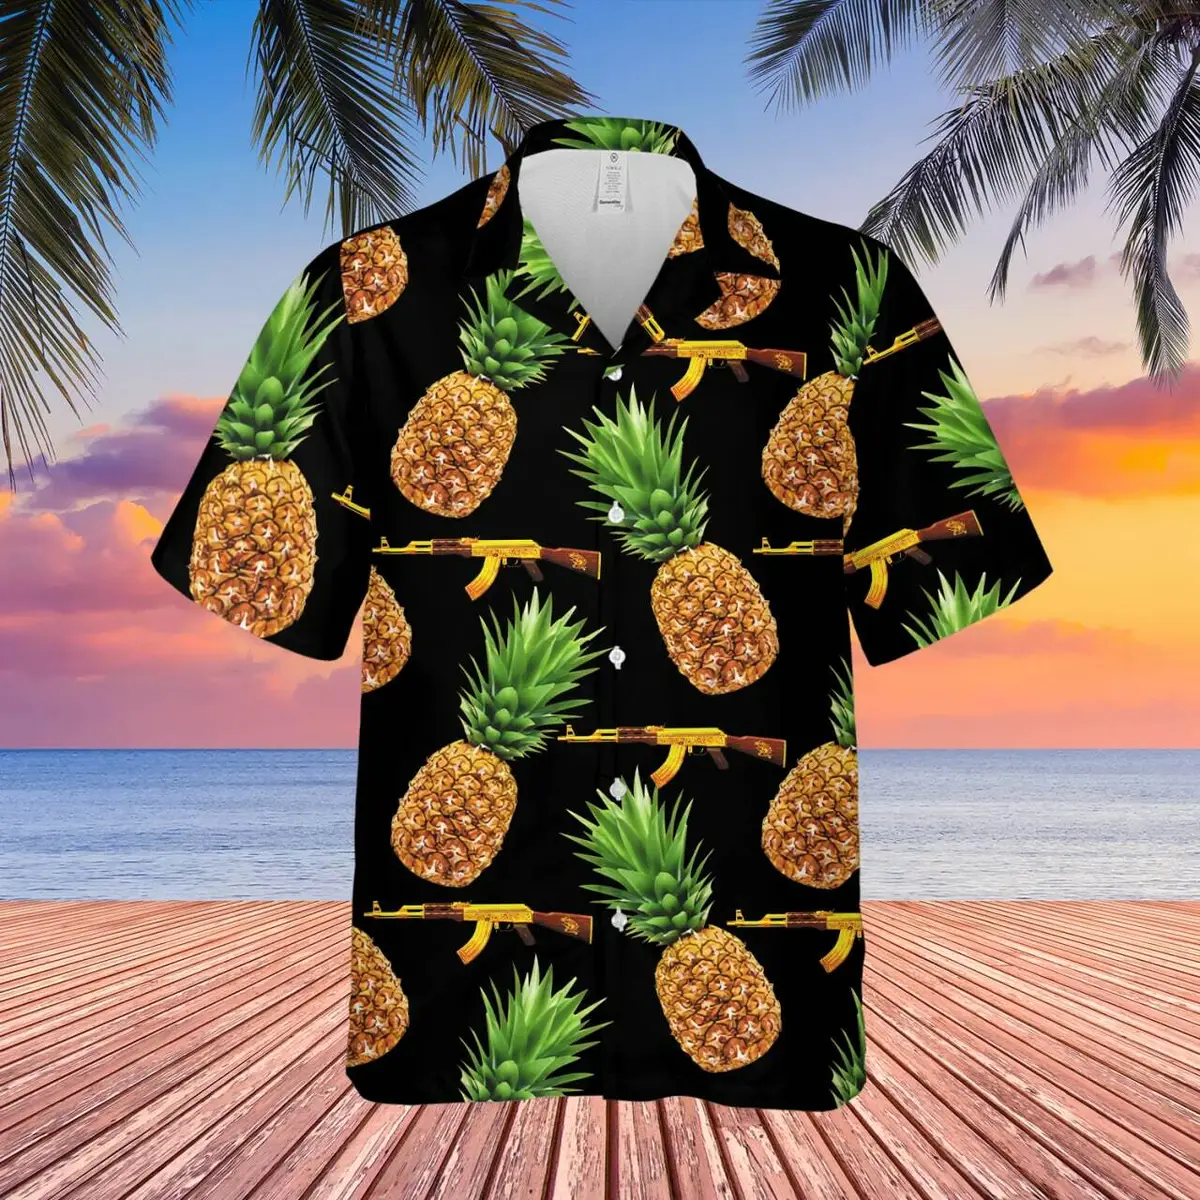 What is Hawaiian Shirt